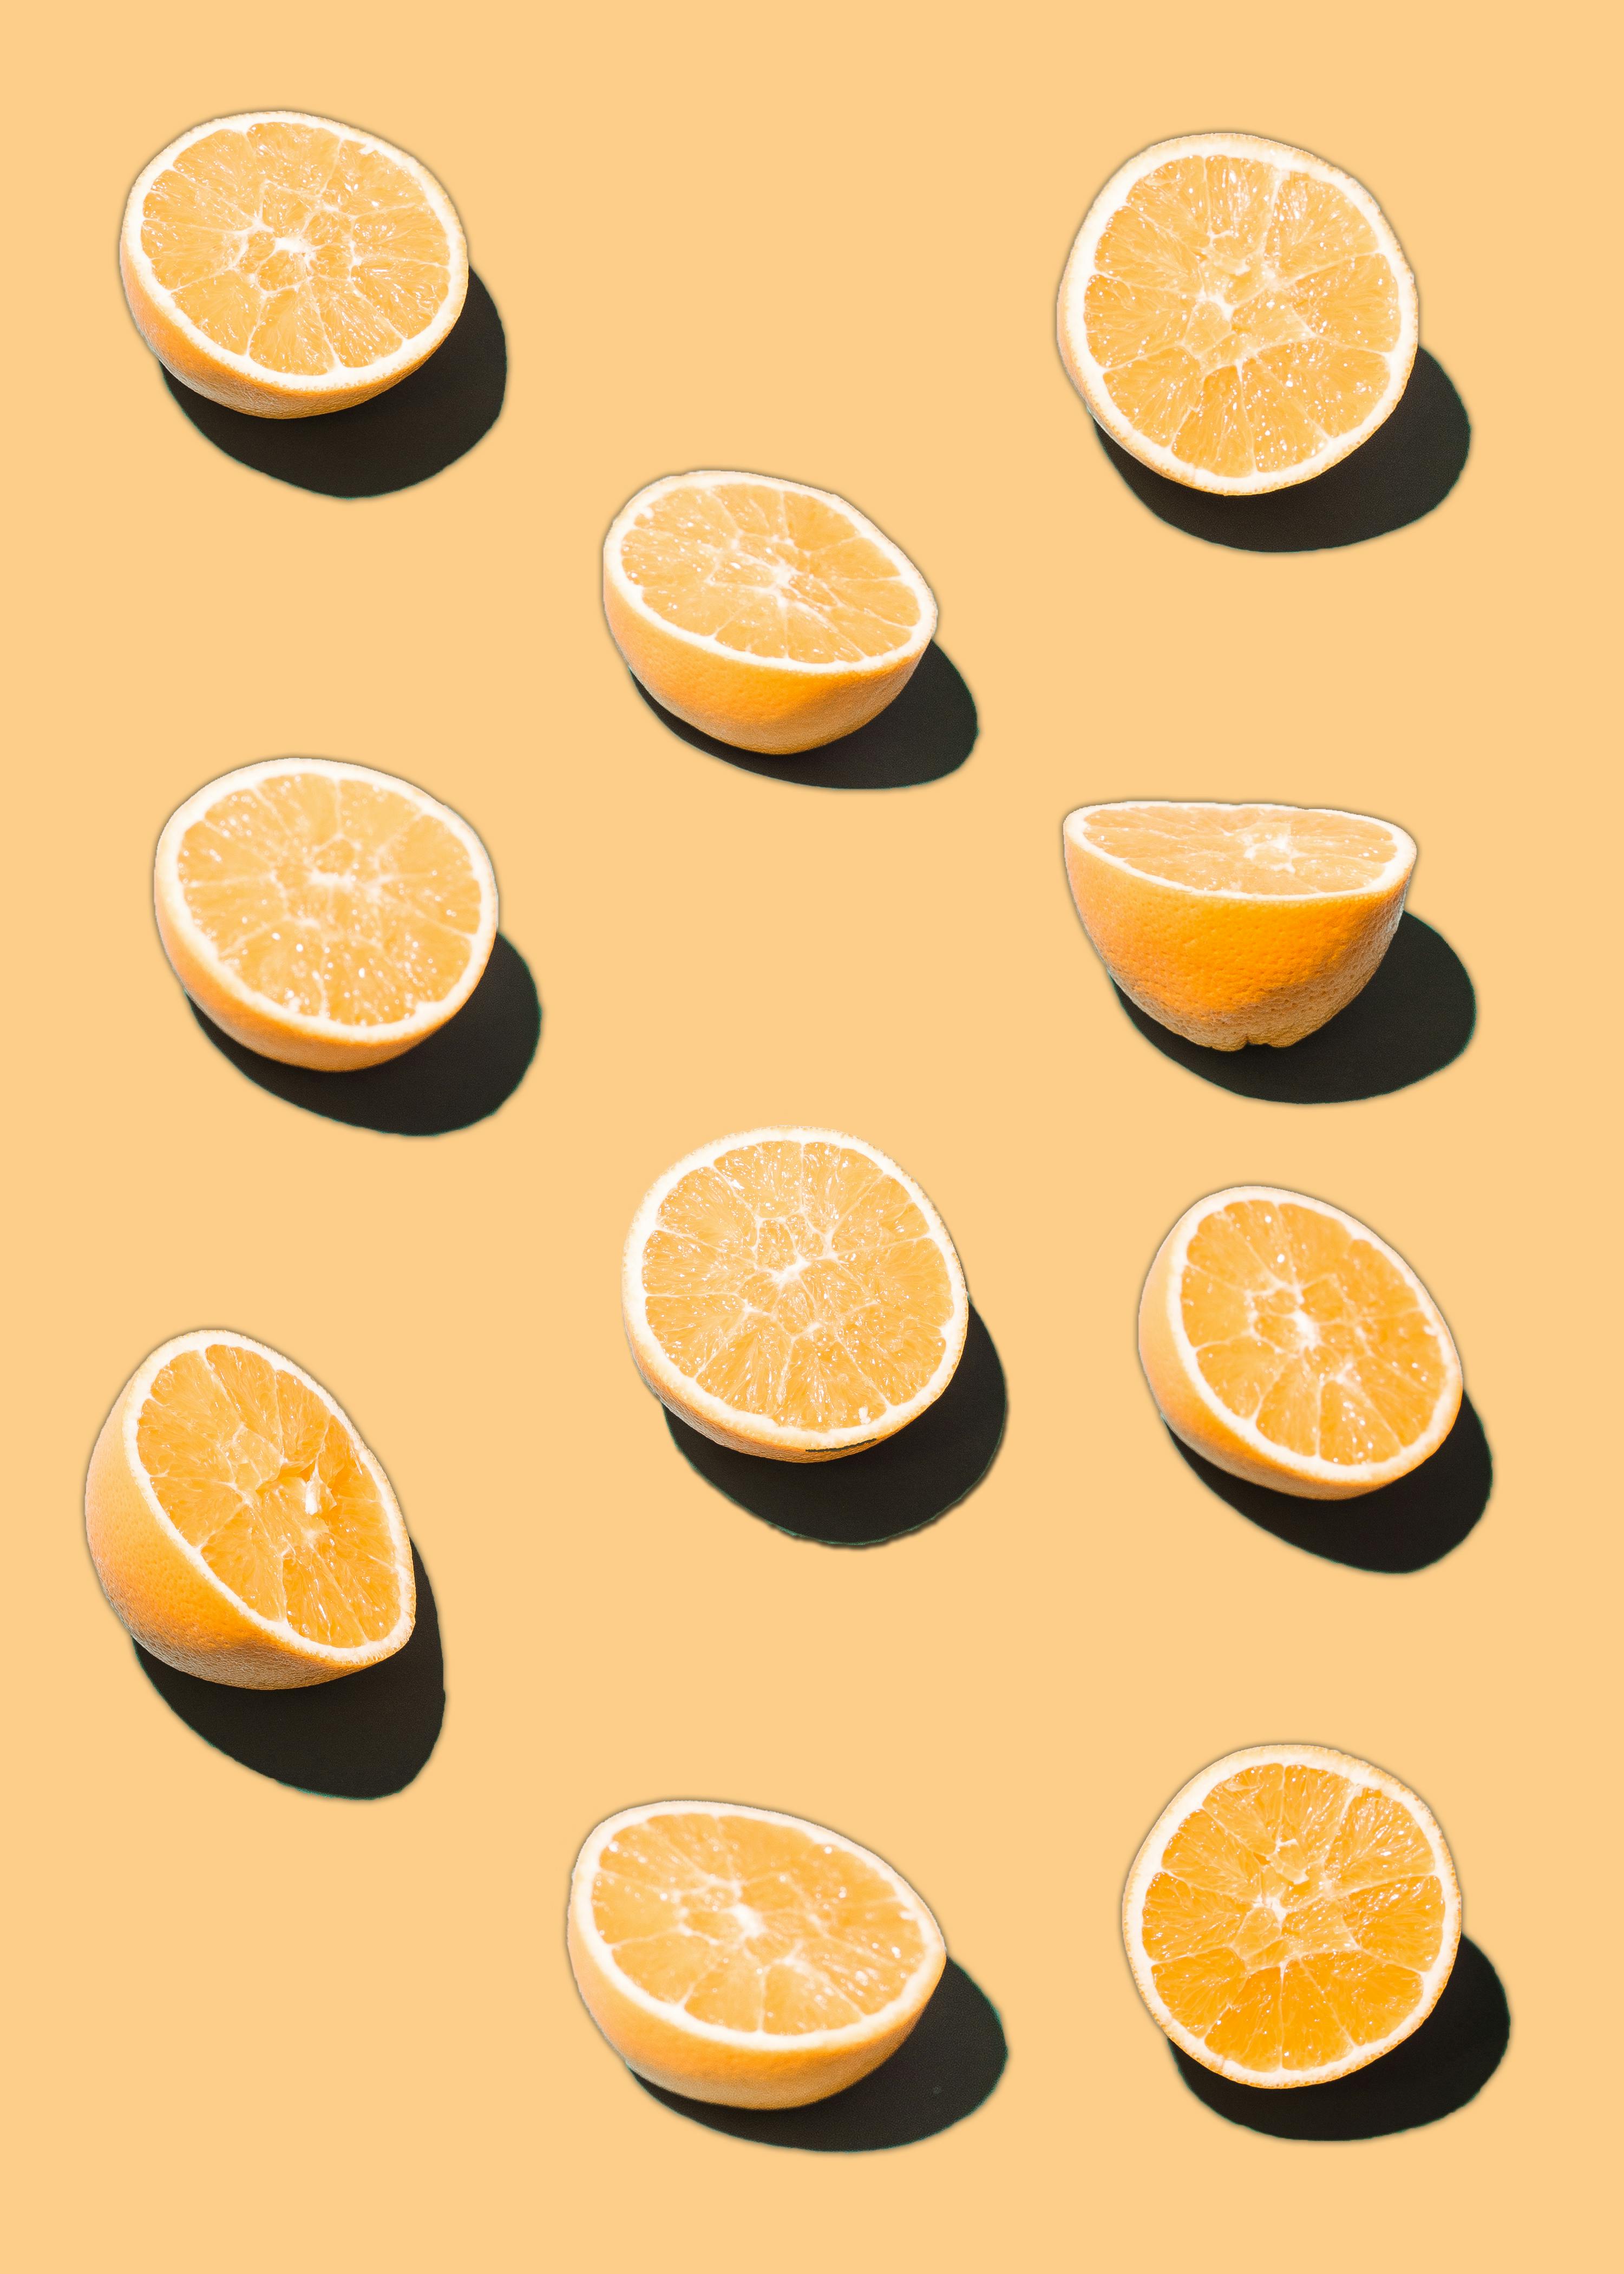 Orange Background Photos, Download The BEST Free Orange Background Stock  Photos & HD Images